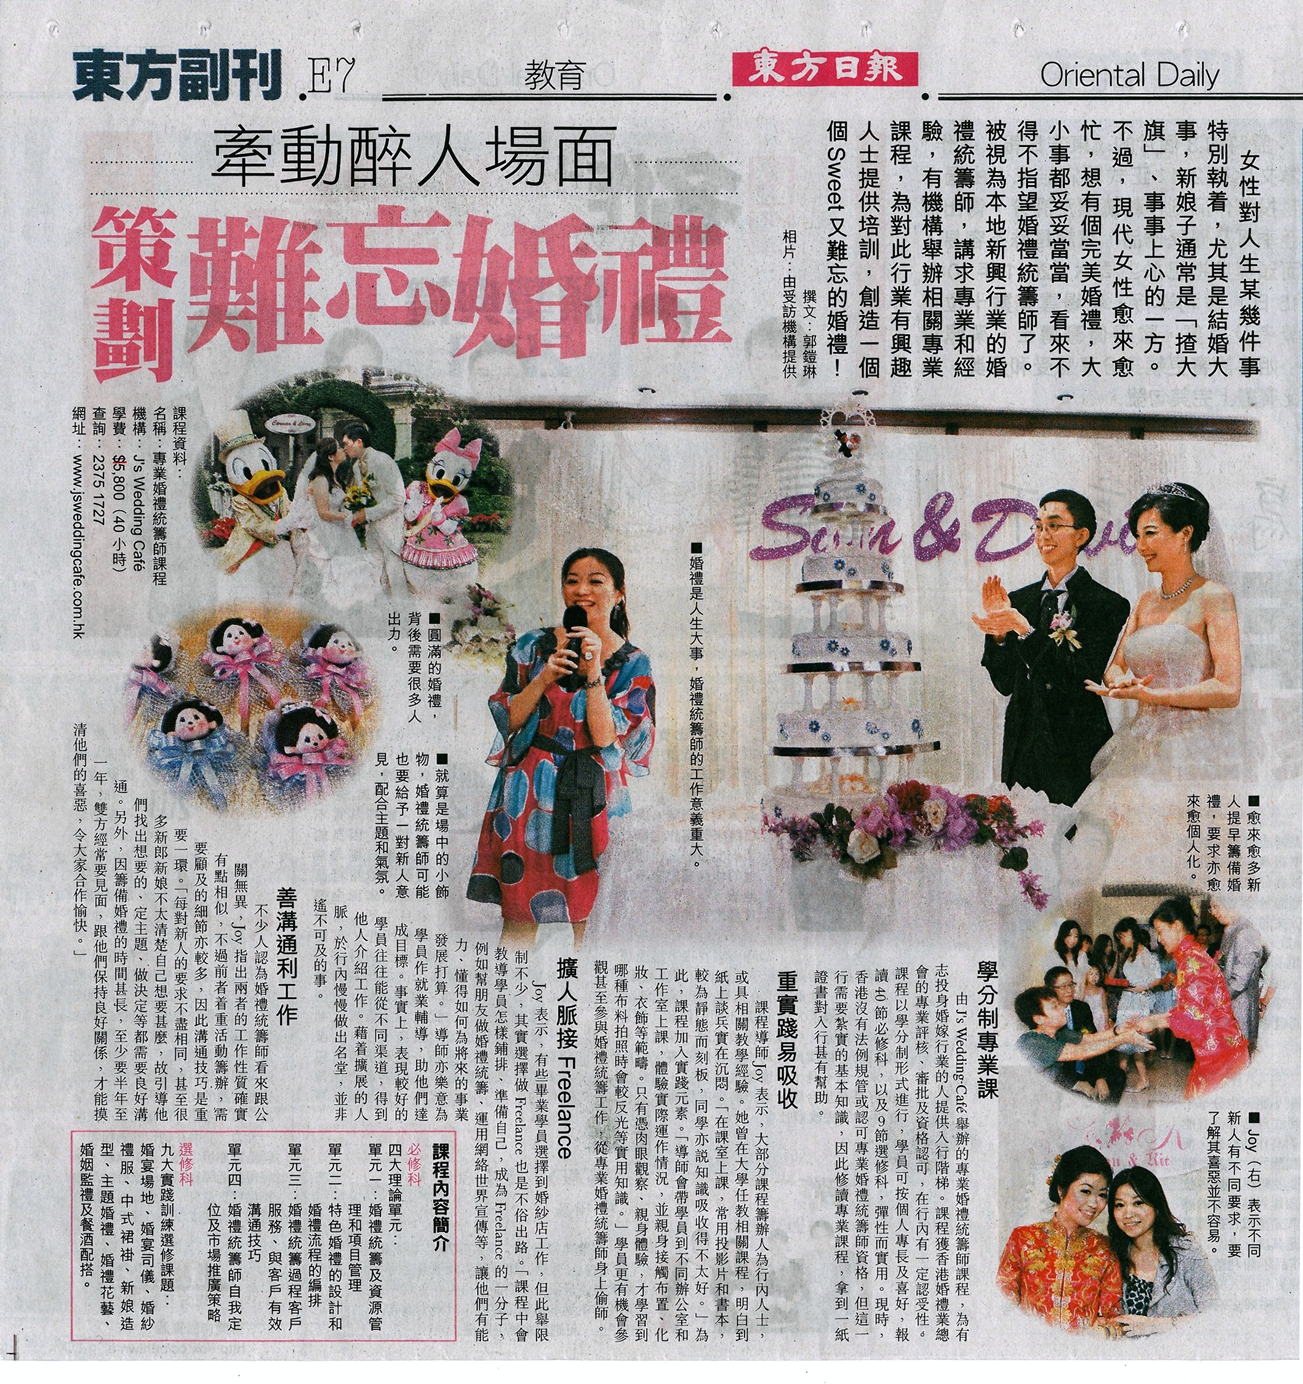 婚禮統籌師Joy Tai之媒體報導: 東方日報訪問